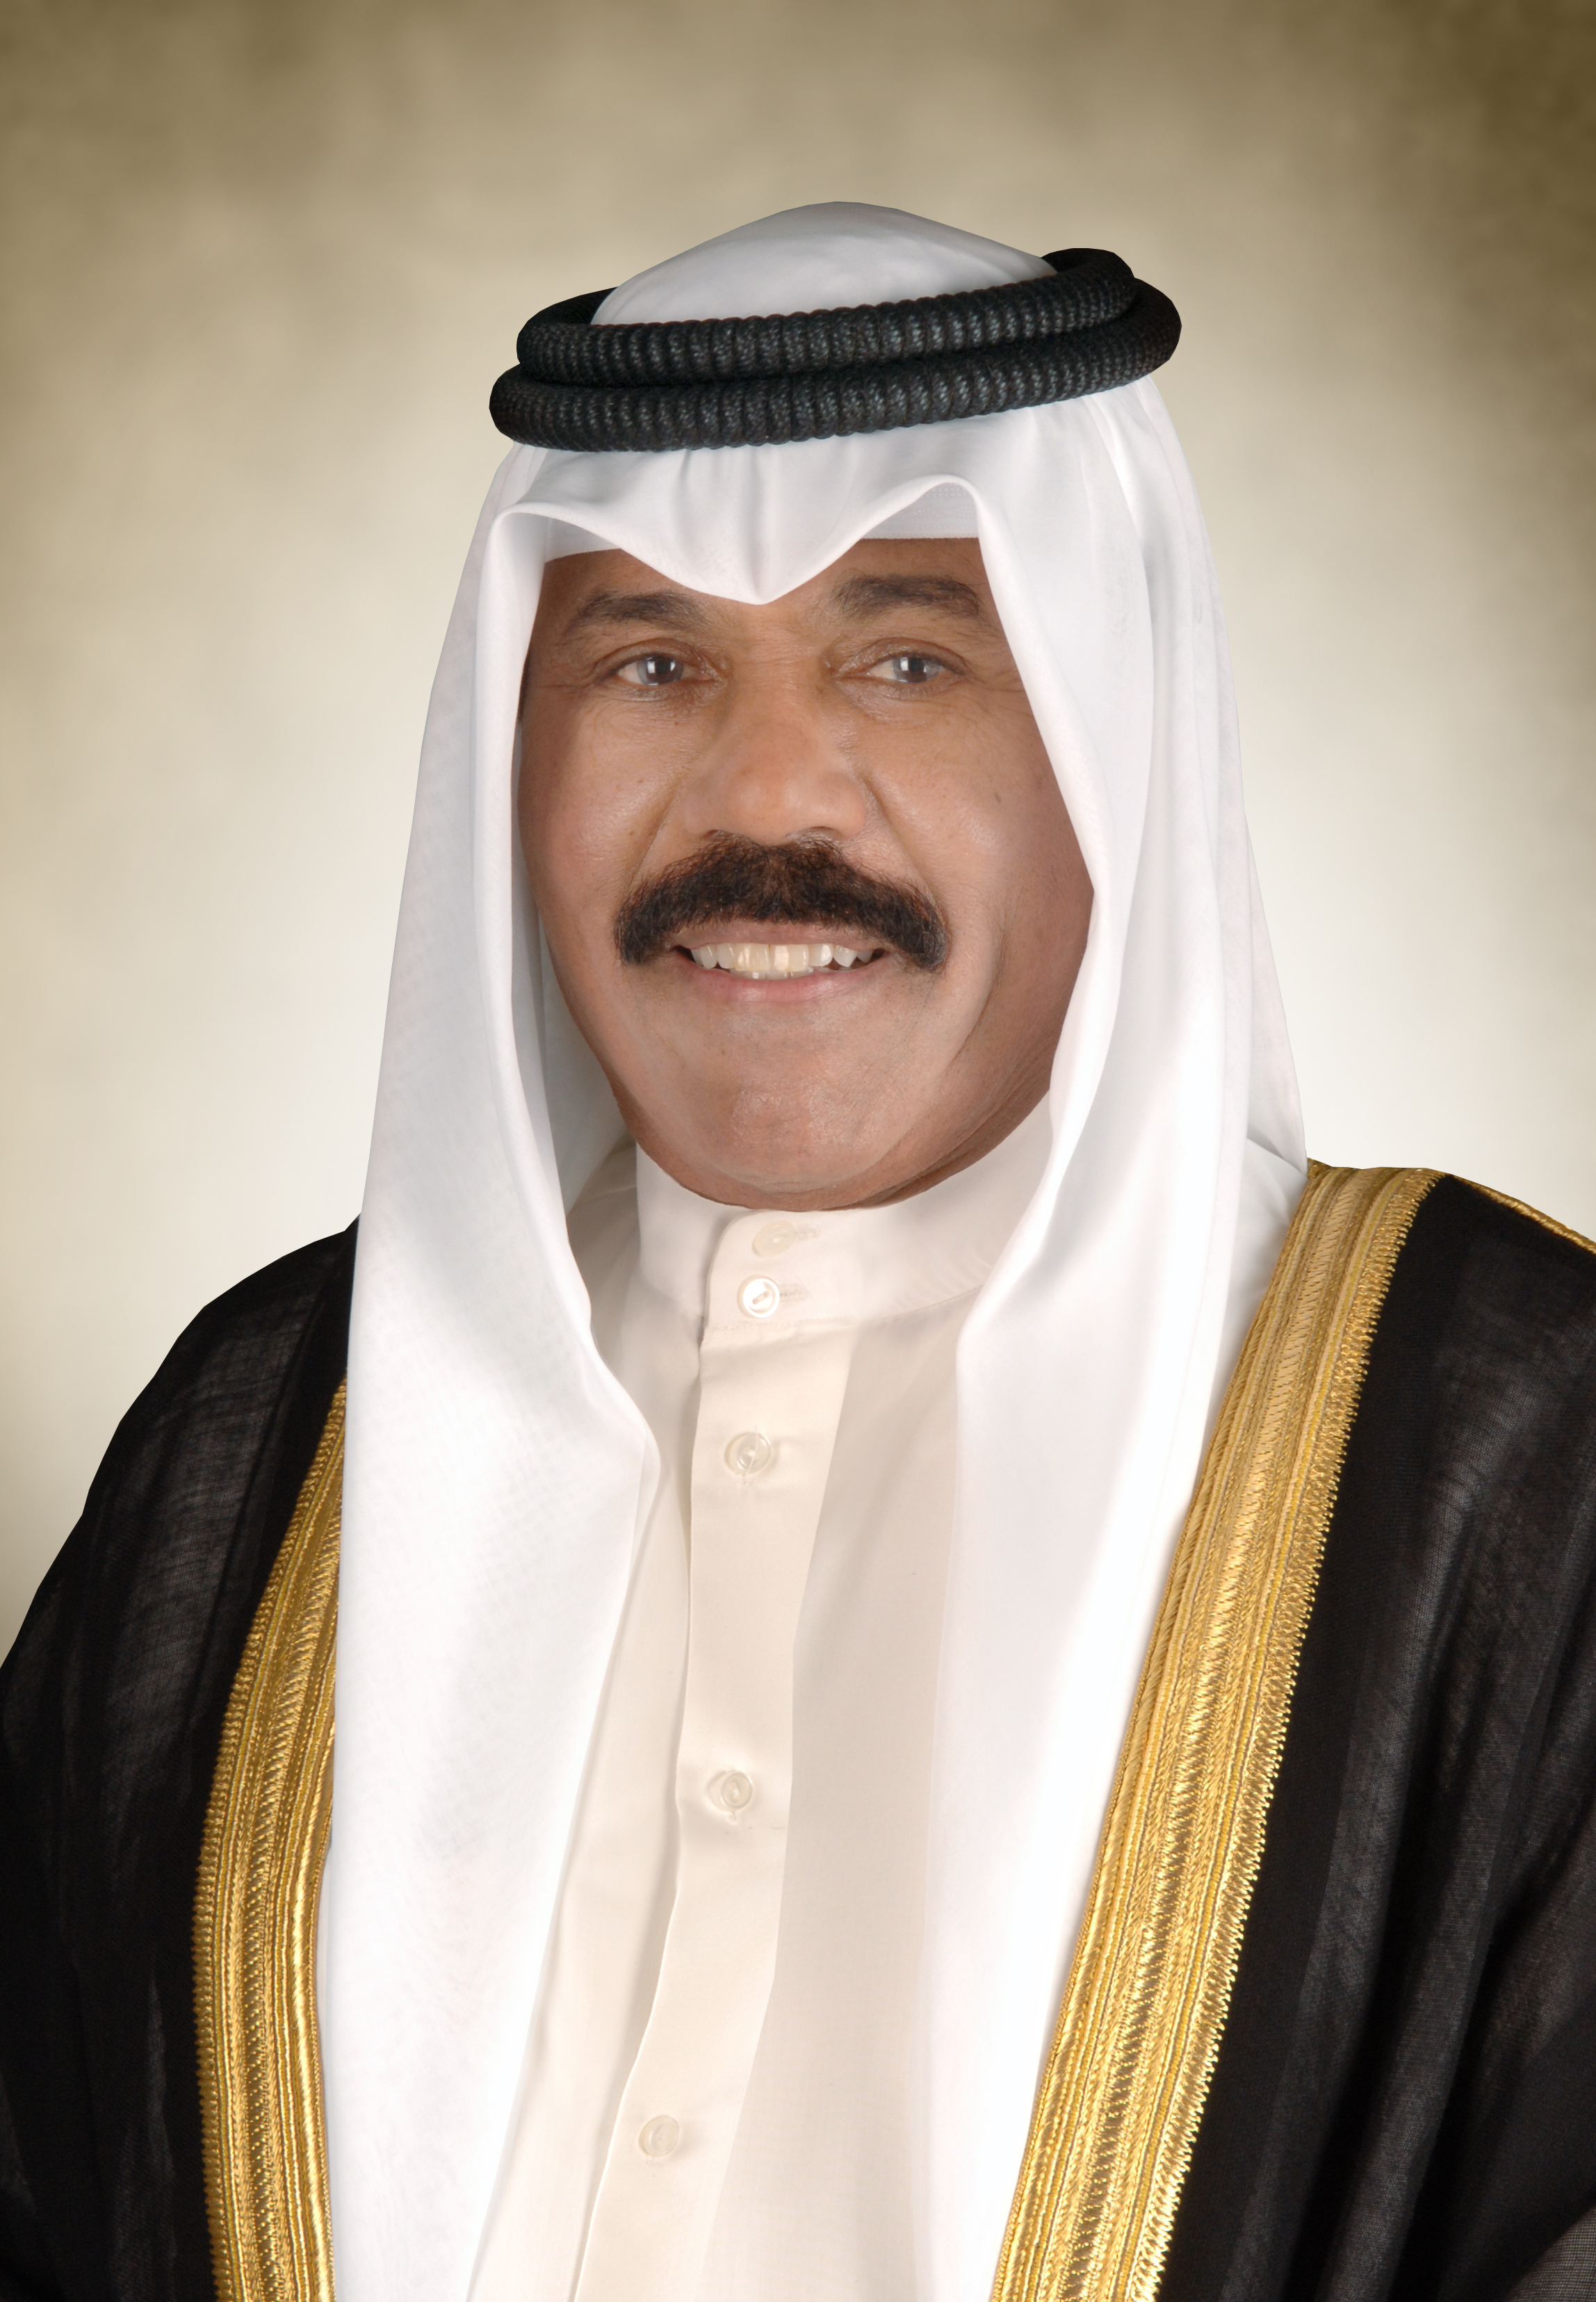 سمو أمير البلاد يتلقى برقية تهنئة من سلطان عمان بمناسبة الذكرى الثانية لتولي سموه مقاليد الحكم